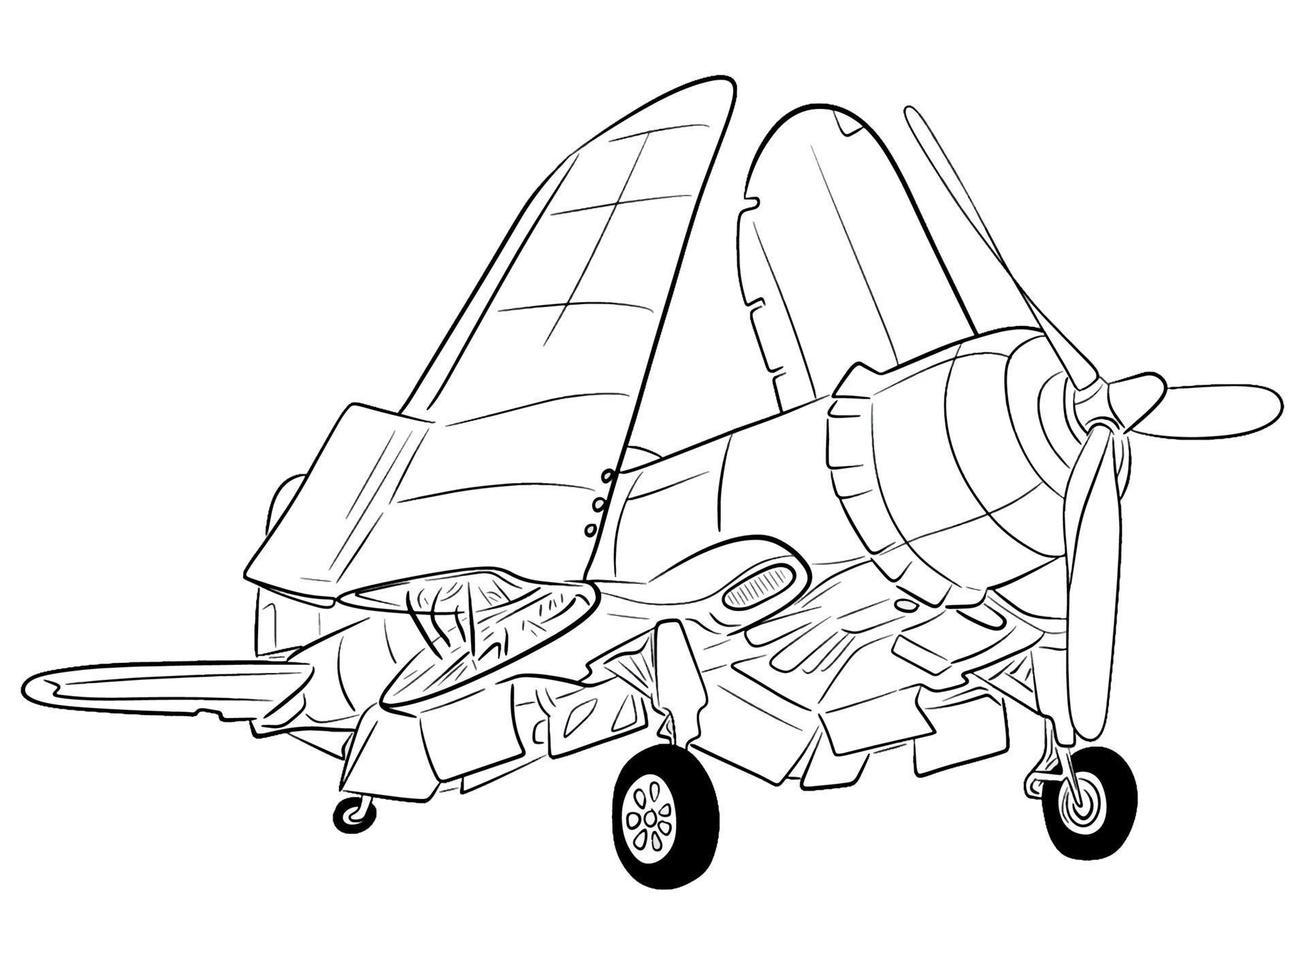 ilustração do vetor de avião de guerra